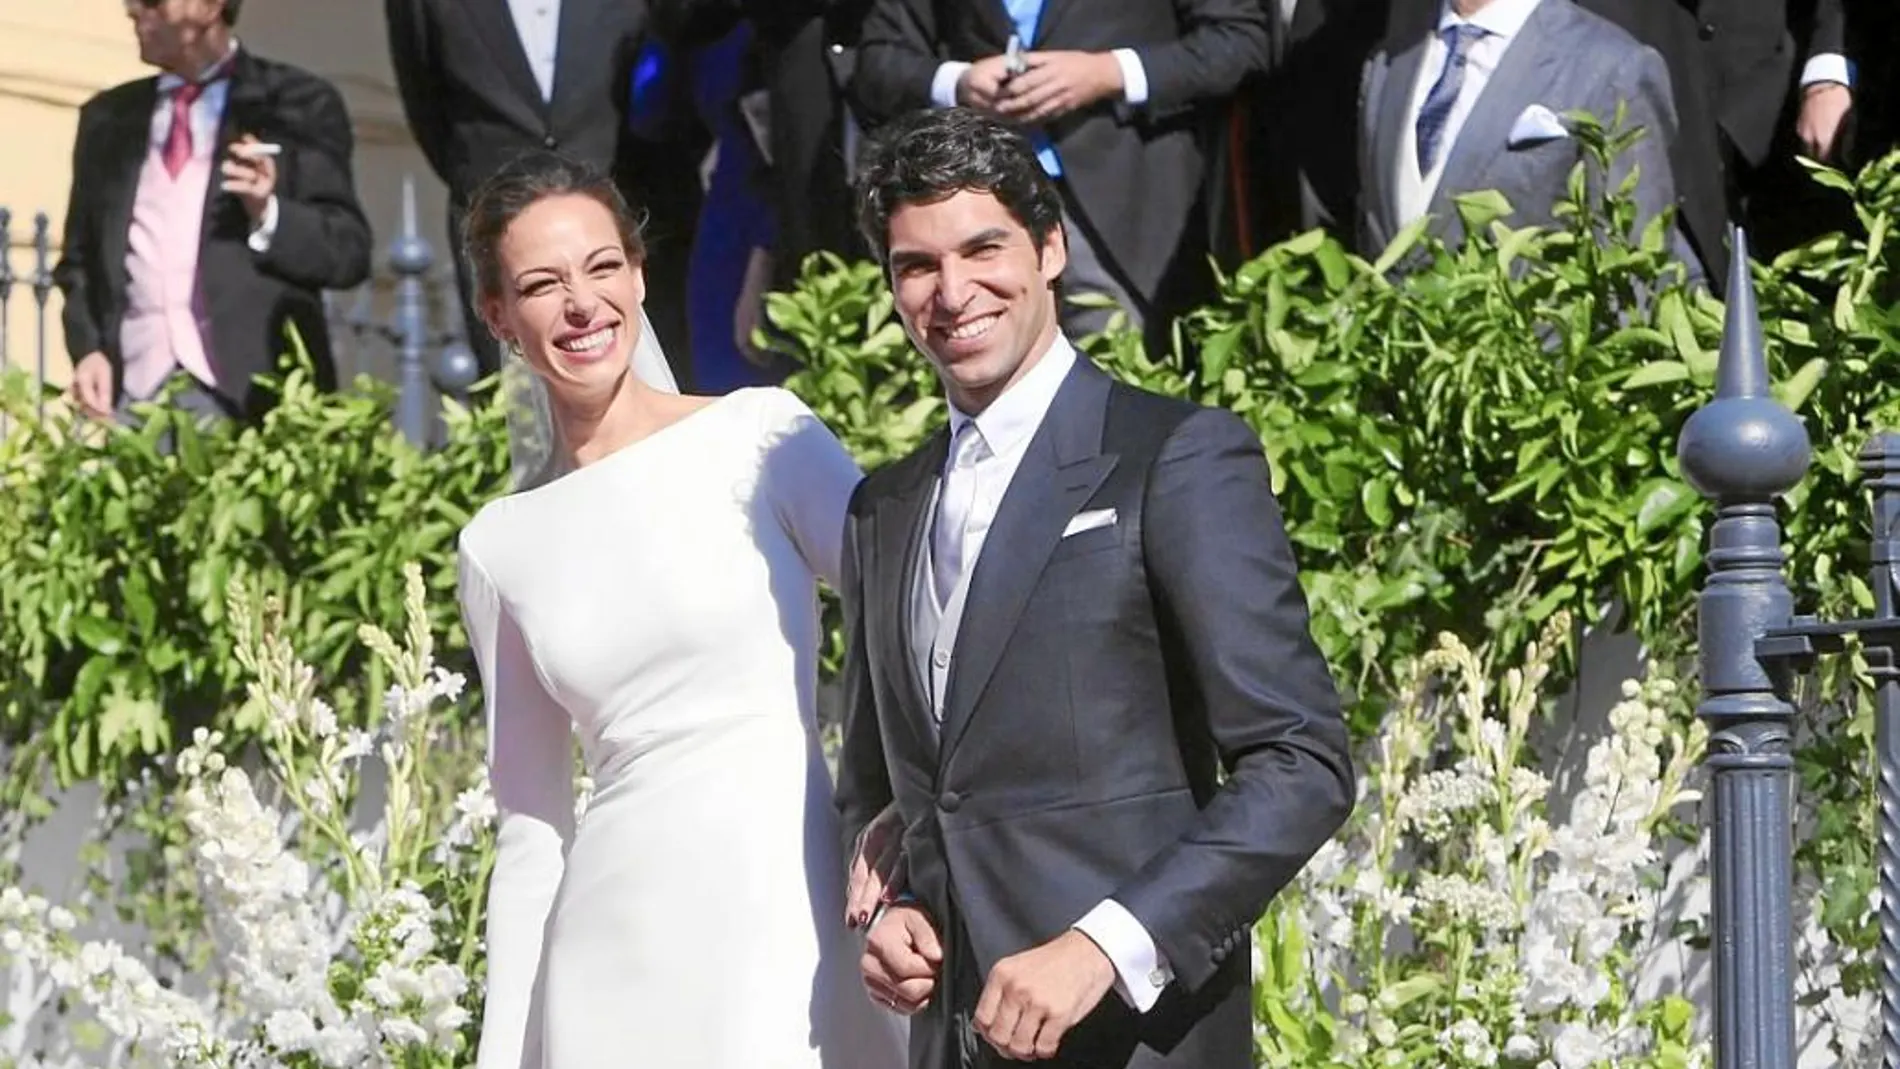 La boda del año en España fue el enlace entre Cayetano y Eva